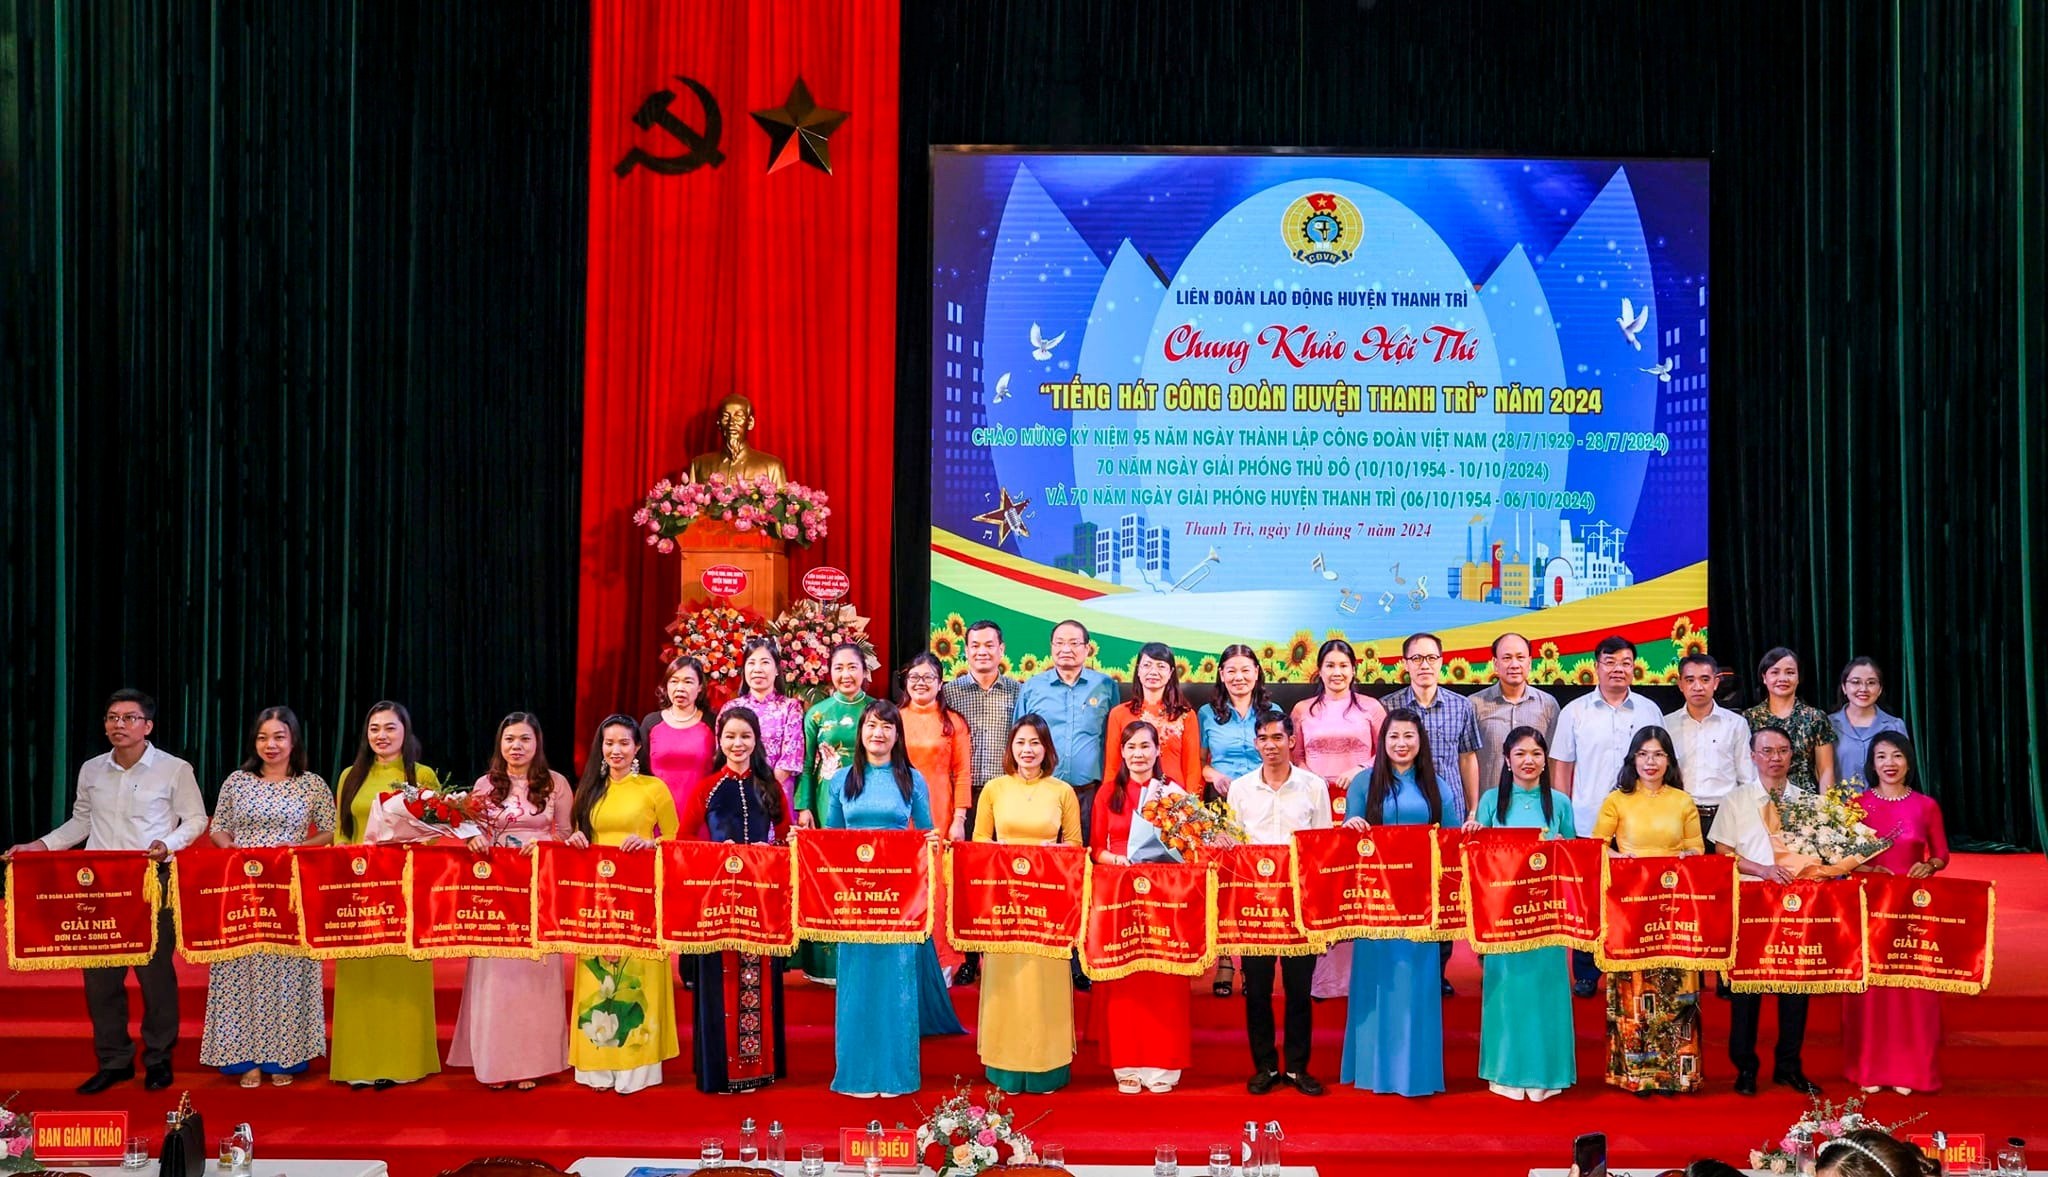 Liên đoàn Lao động huyện Thanh Trì: Cùng Công đoàn Việt Nam đổi mới và phát triển